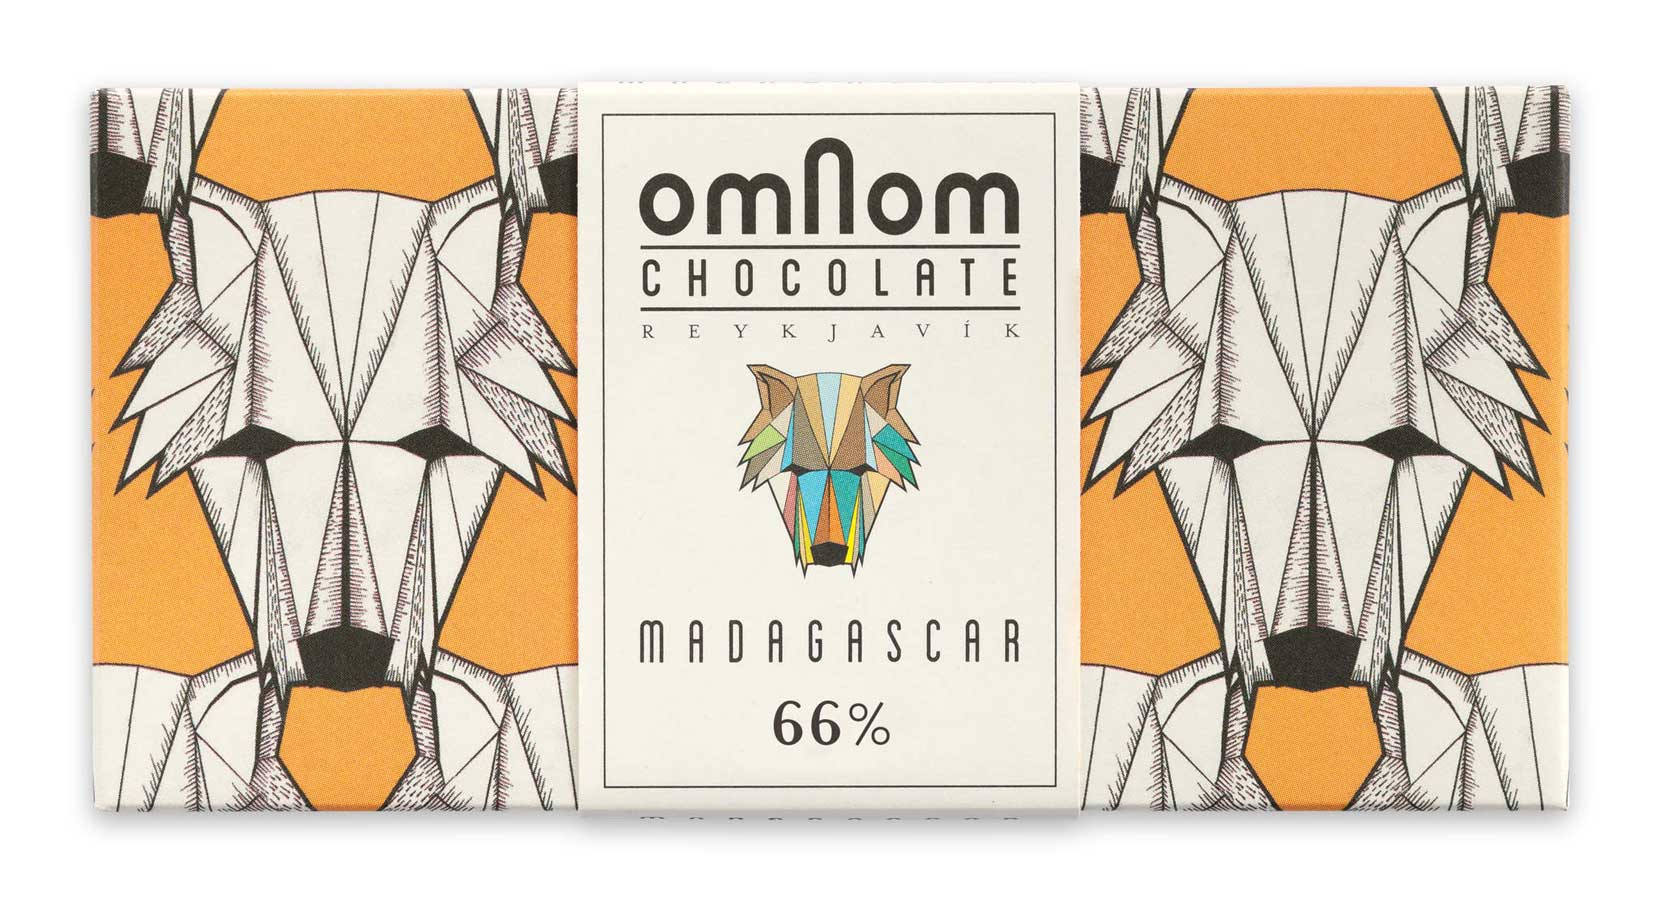 Verpackung der dunklen Madagaskar-Schokolade von Omnom in orange mit Wolfskopf-Muster